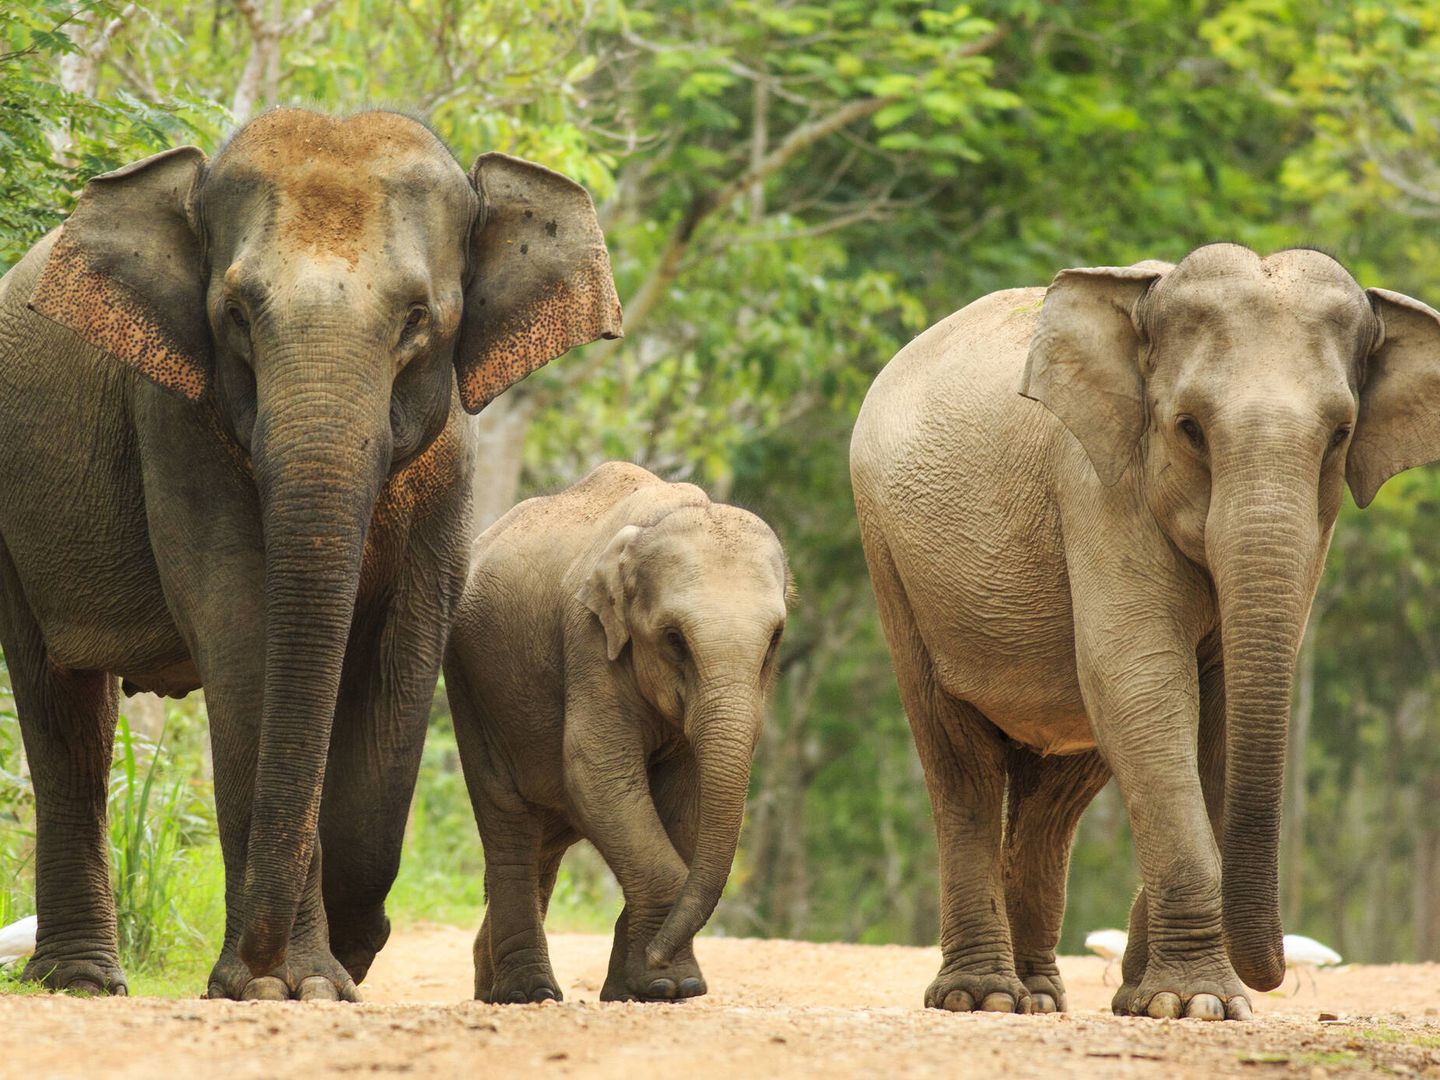 Han comprobado que los elefantes asiáticos hambrientos devoran la comida, los envases de plástico, los utensilios y otras basuras (Fuente: iStock).